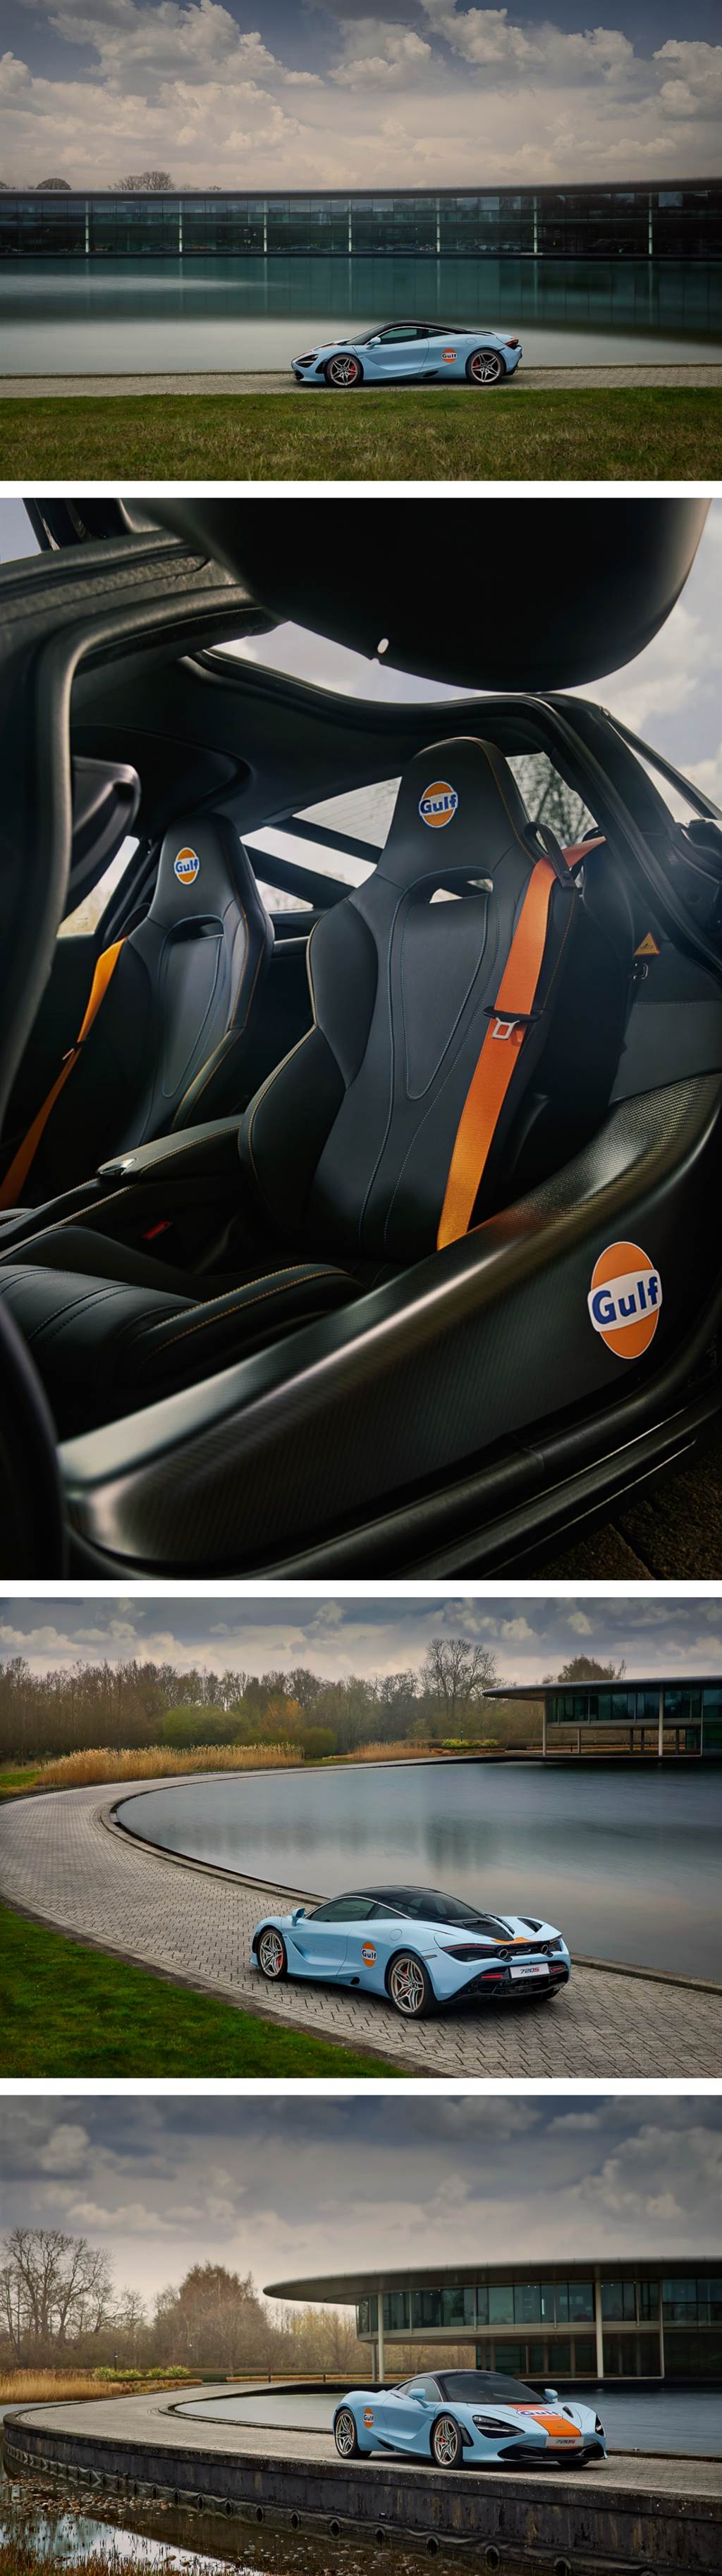 經典塗裝再現 McLaren MSO 頂級客製化部門限量推出 Gulf Oil 720S
